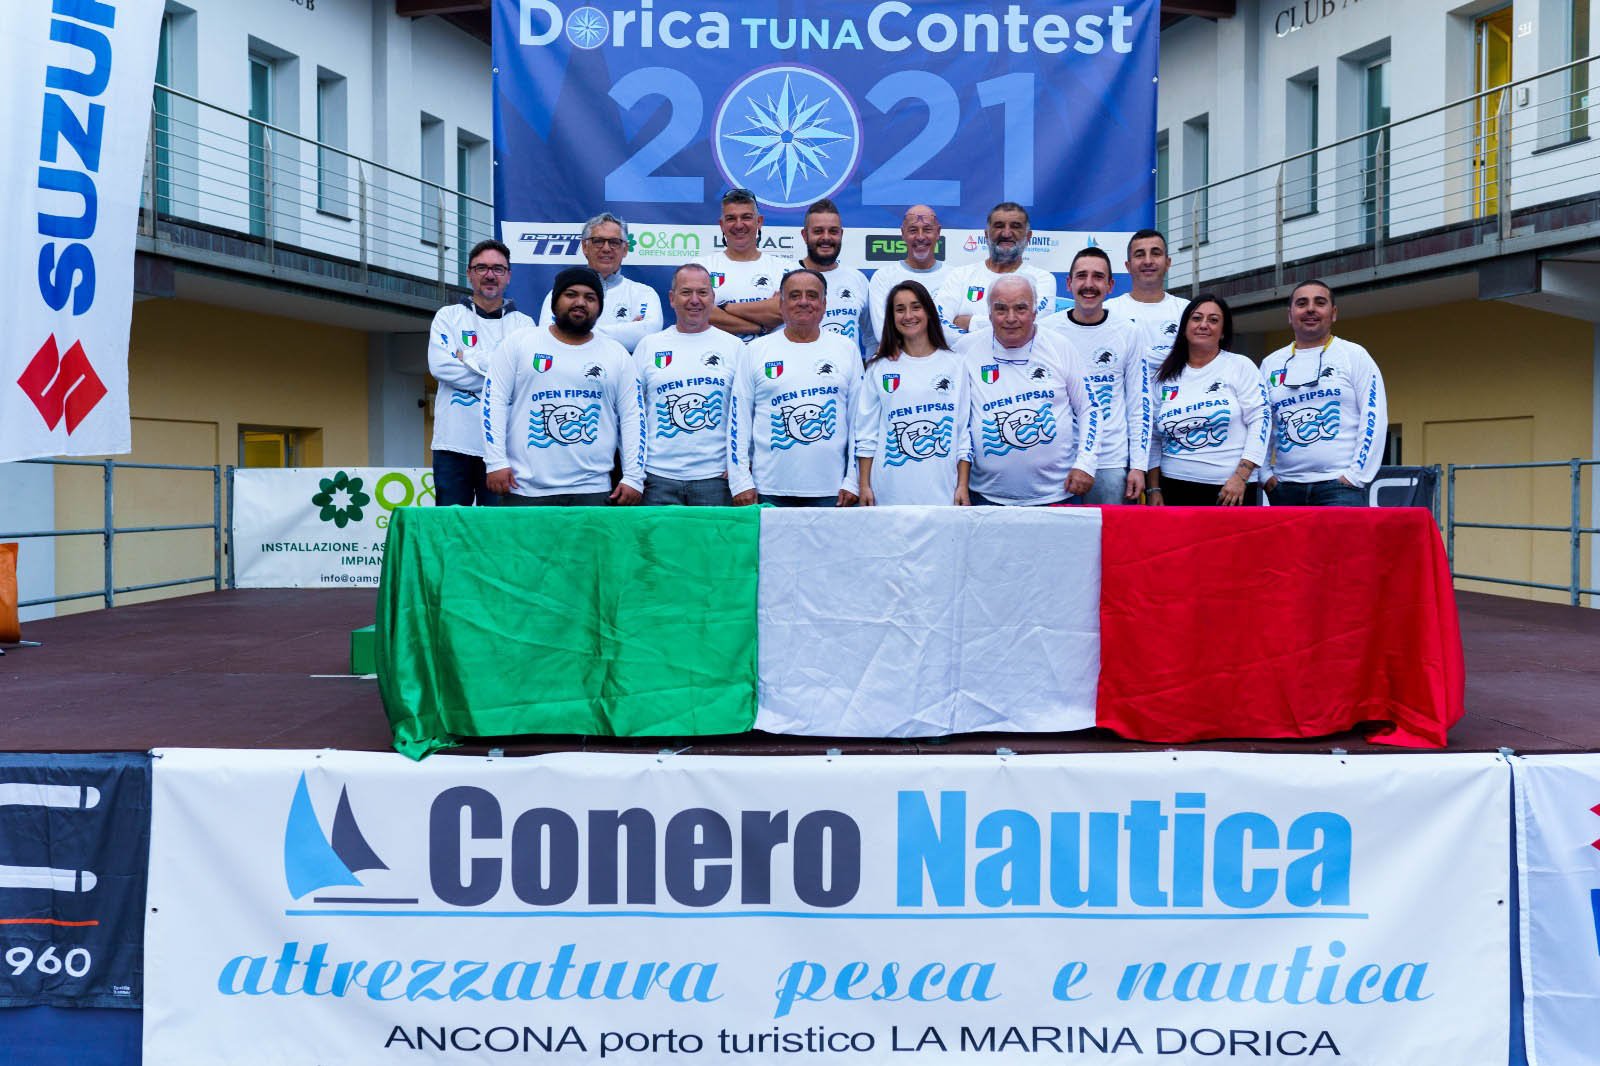 Dorica Tuna Contest 2021